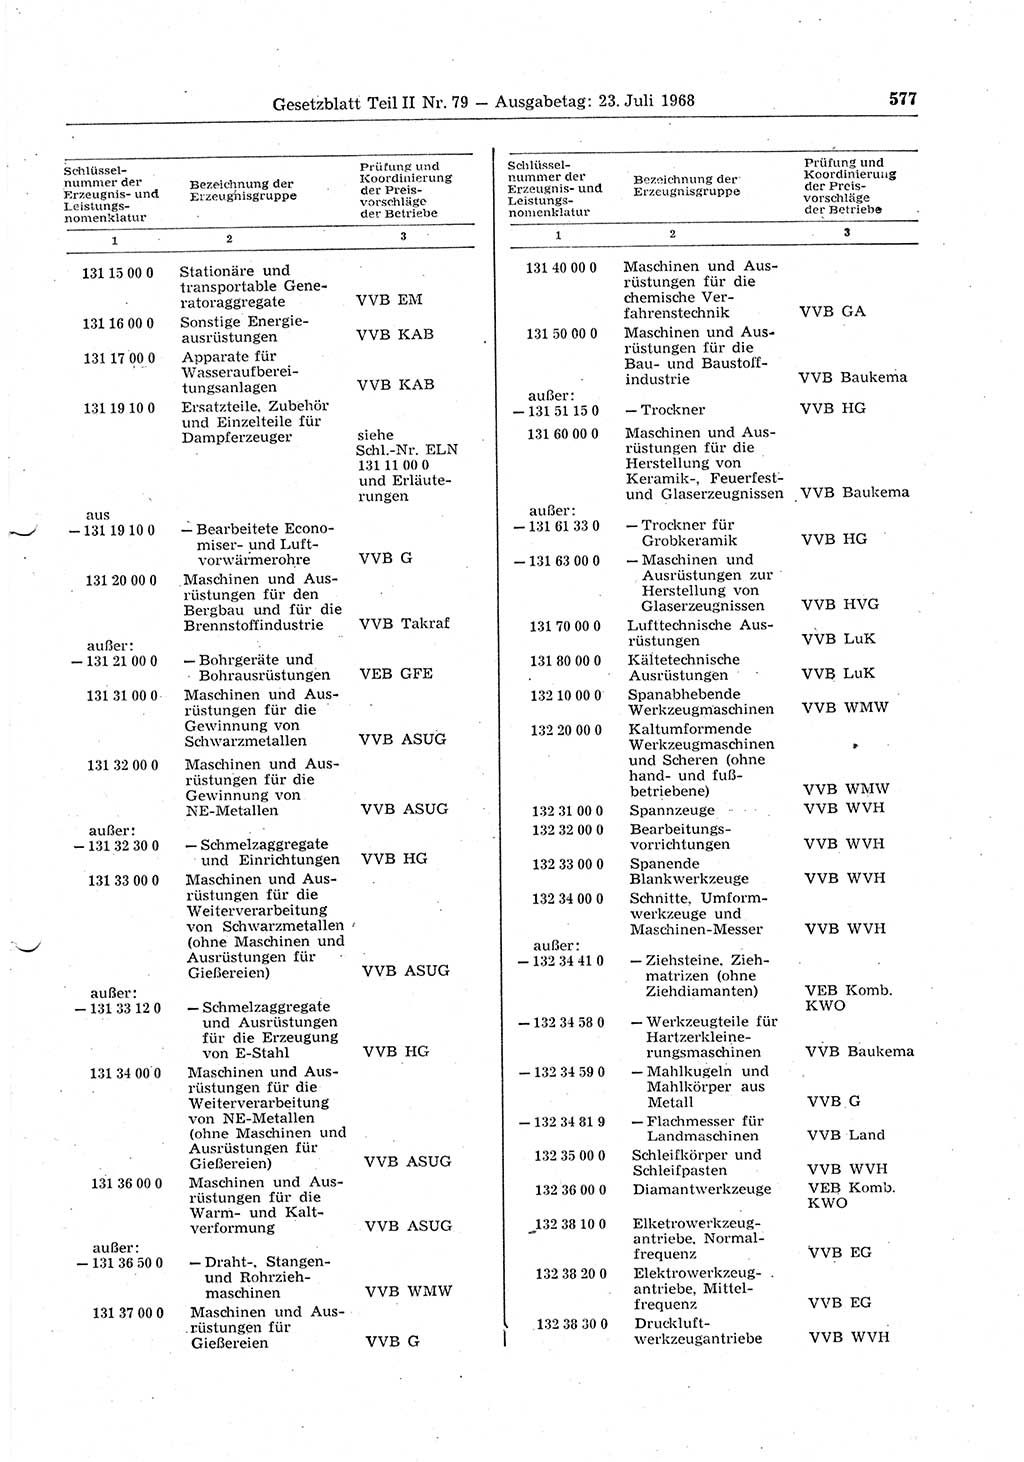 Gesetzblatt (GBl.) der Deutschen Demokratischen Republik (DDR) Teil ⅠⅠ 1968, Seite 577 (GBl. DDR ⅠⅠ 1968, S. 577)